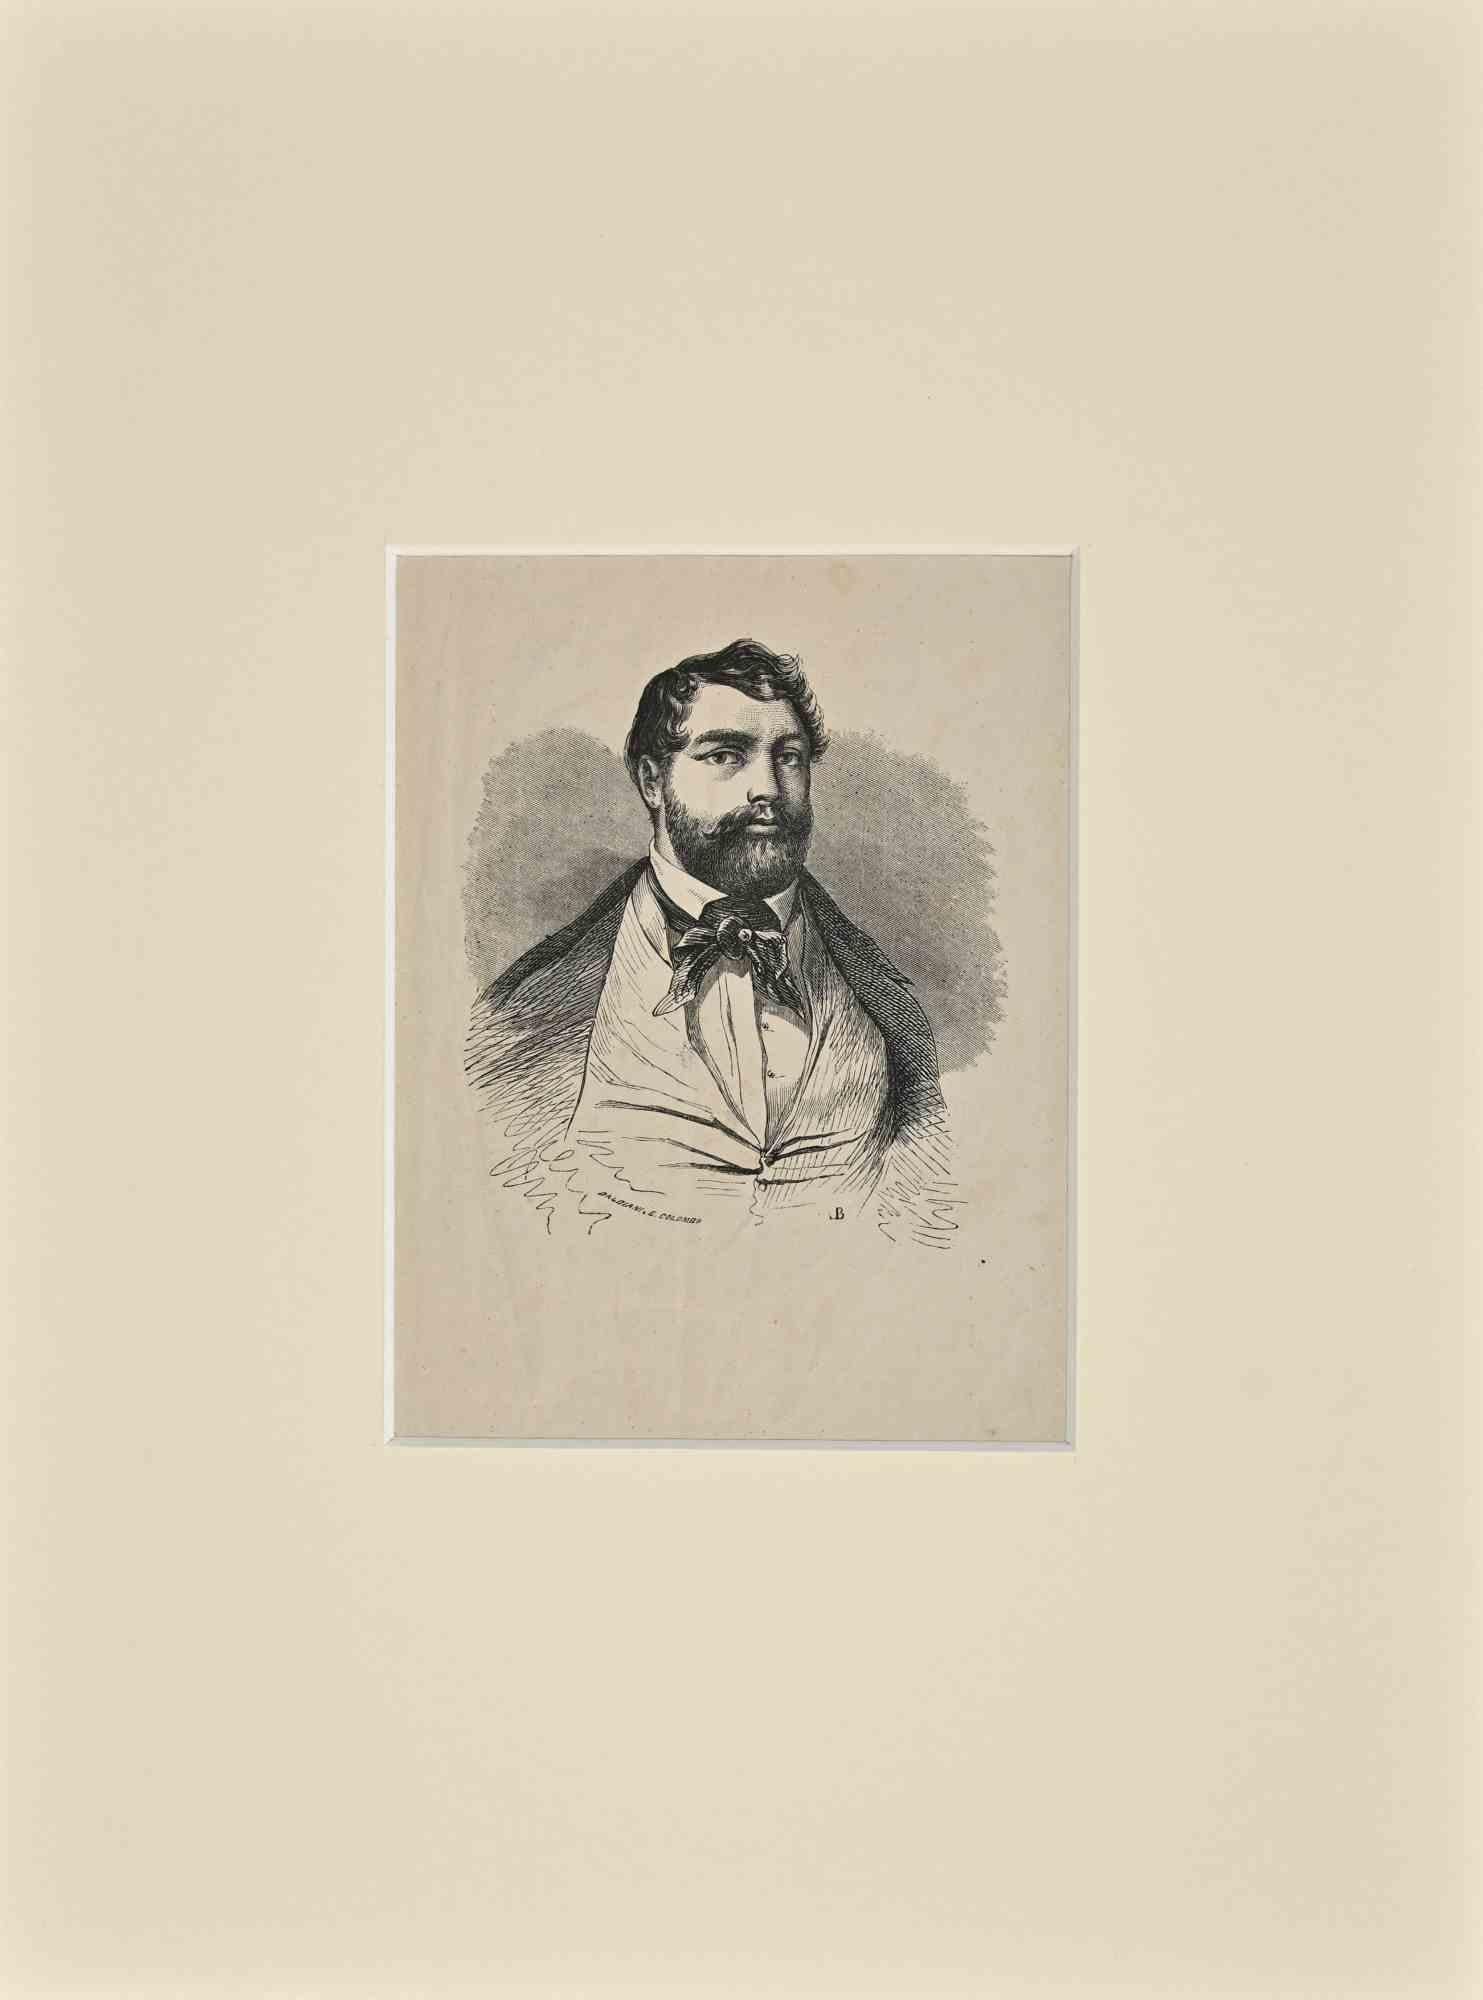 Das Porträt ist eine Original-Lithographie auf elfenbeinfarbenem Papier, die im 19. Jahrhundert von Giuseppe Balbiani angefertigt wurde.

Signiert auf der Platte

Guter Zustand mit einigen Faltungen und einem Schnitt.

Das Kunstwerk wird durch